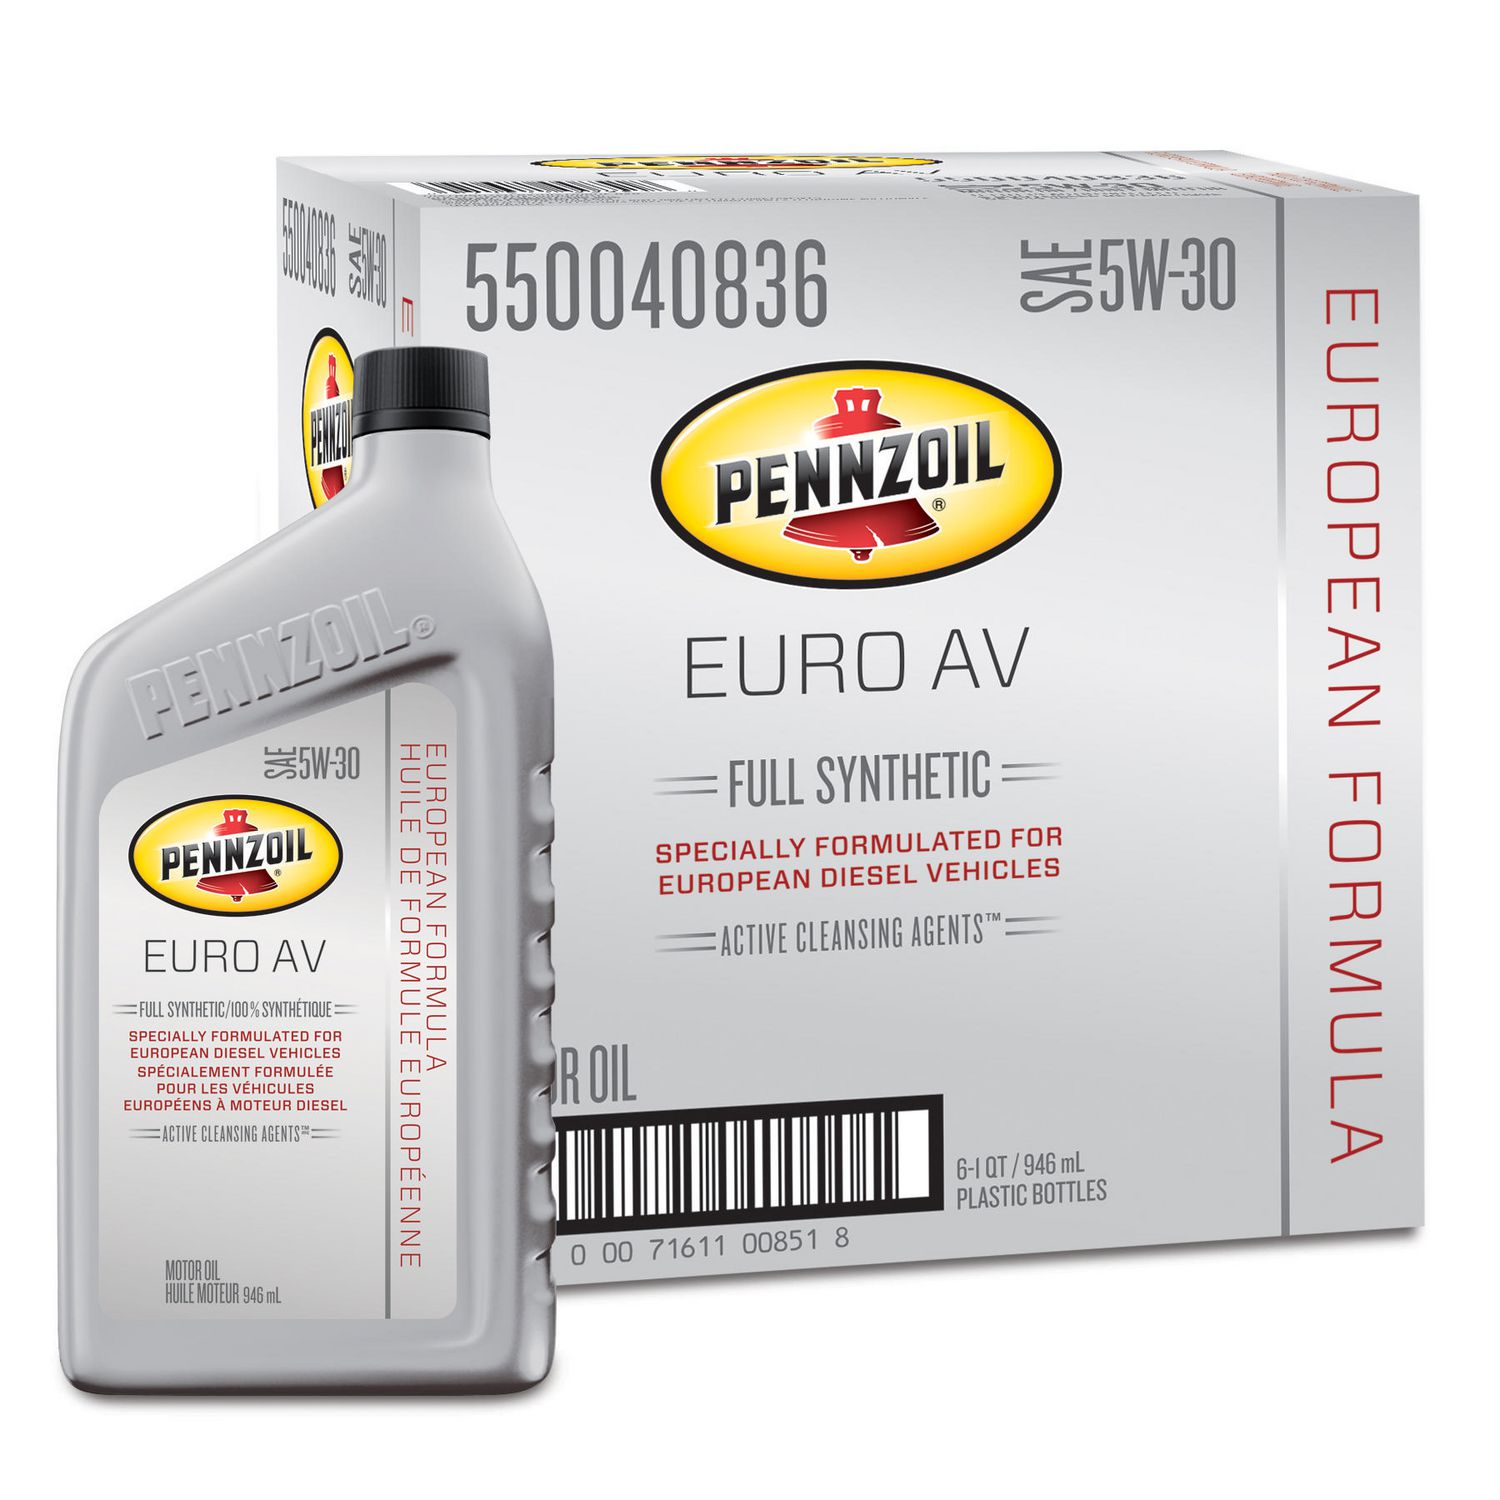 pennzoil-platinum-euro-av-sae-5w-30-full-synthetic-motor-oil-walmart